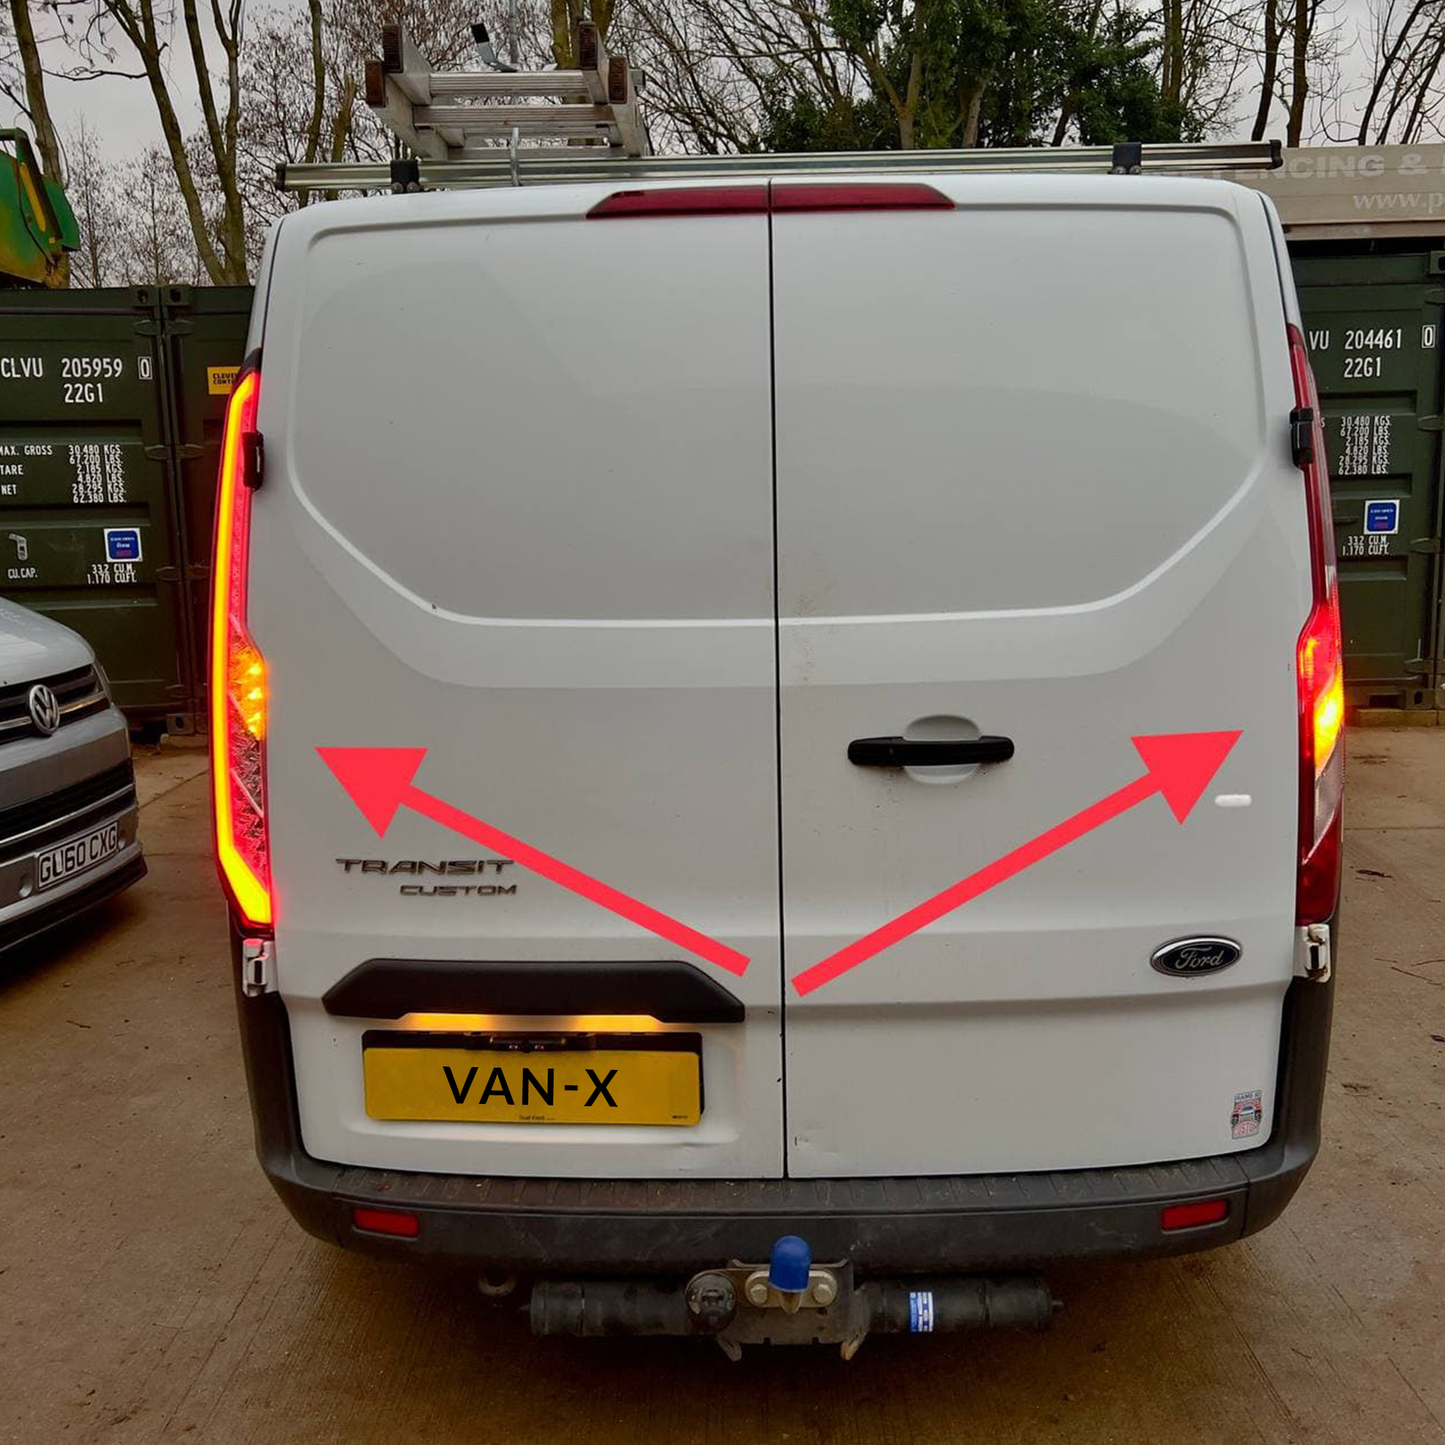 Per Transit Custom Van MK2 Indicatore sequenziale Luci posteriori a LED Lenti trasparenti